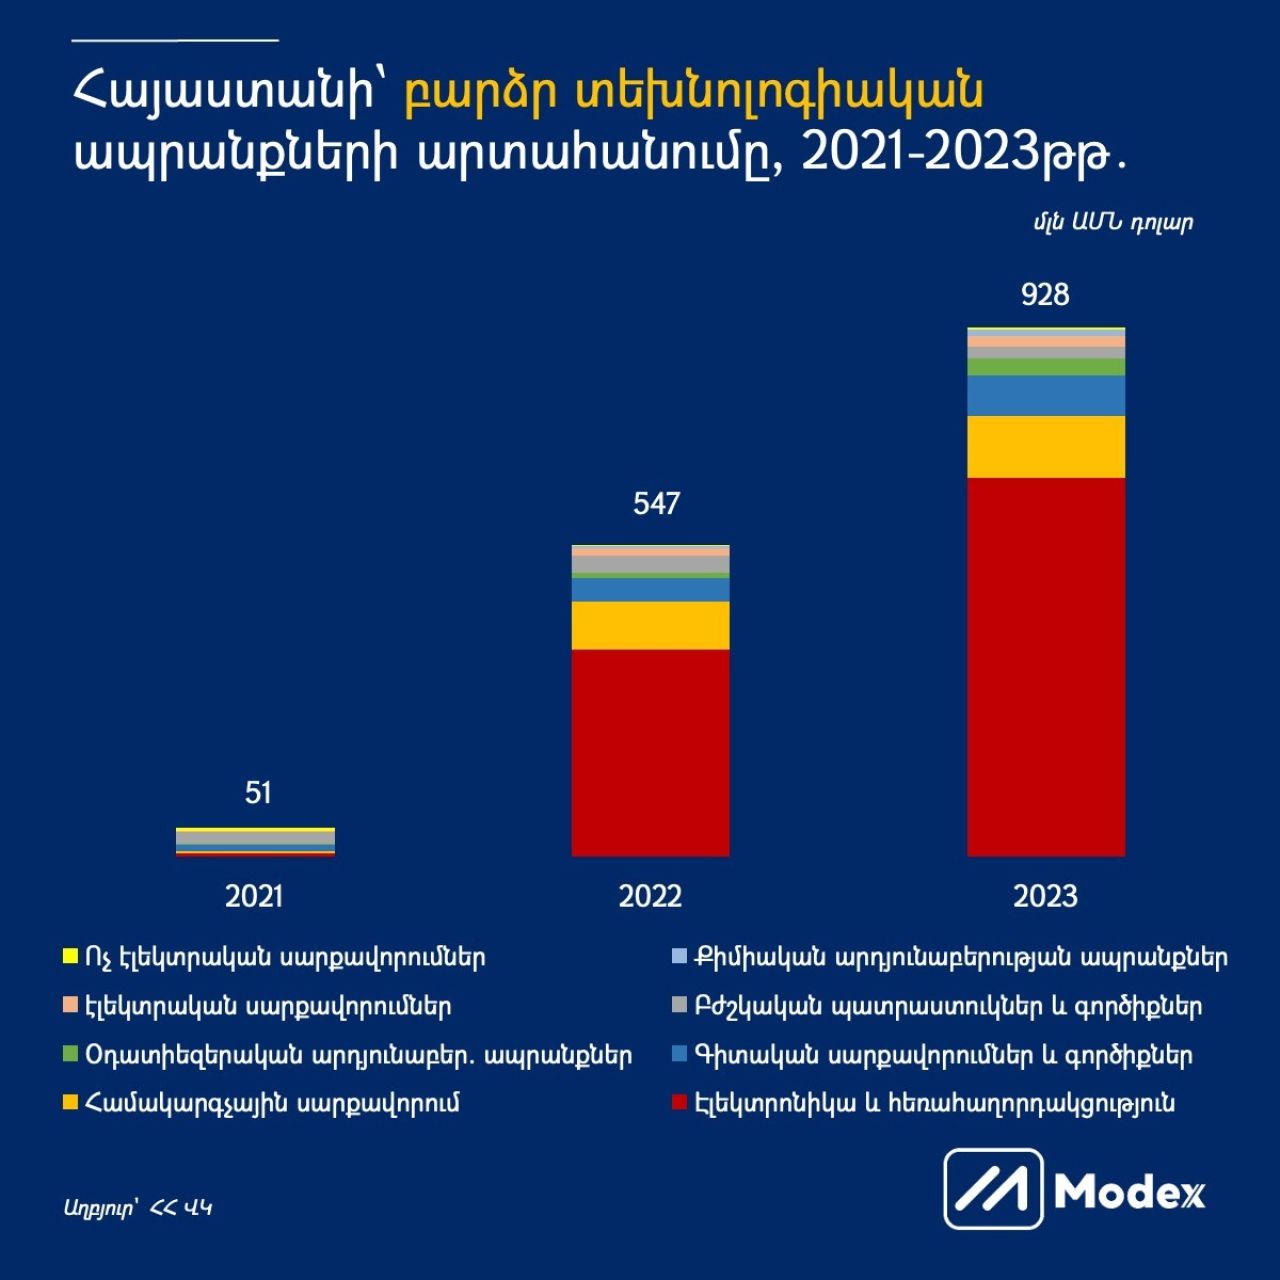 Modex. Հայաստանի՝ բարձր տեխնոլոգիական ապրանքների արտահանումը, 2021-2023թթ․